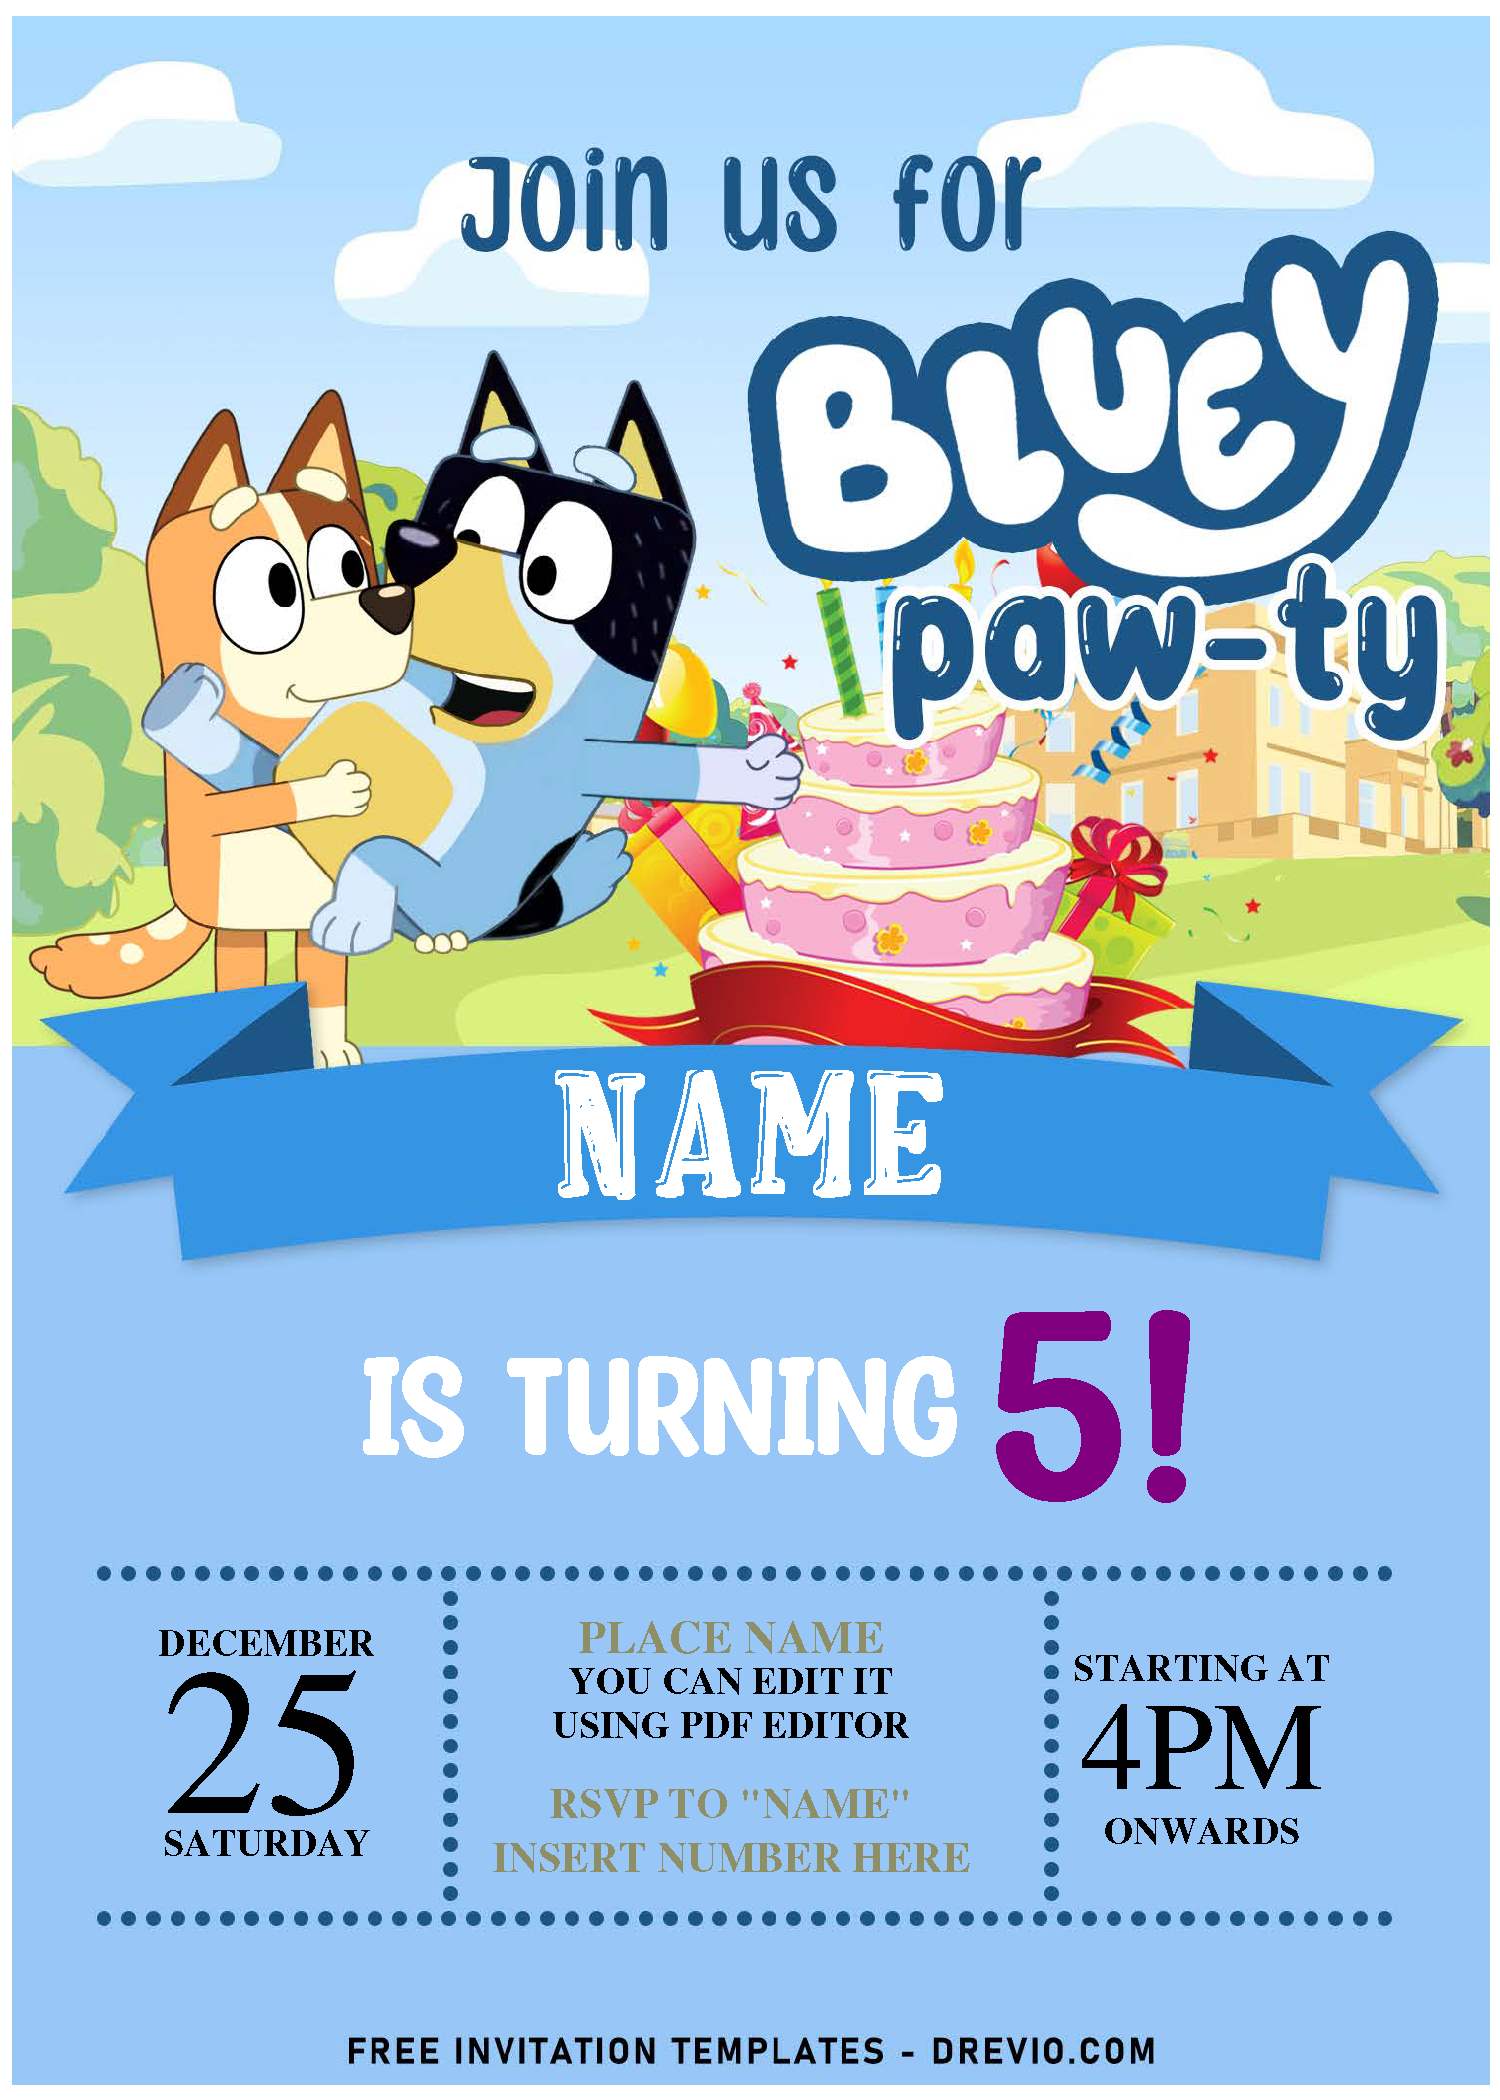 bluey-birthday-bluey-party-bluey-invitation-bluey-pool-party-bluey-my